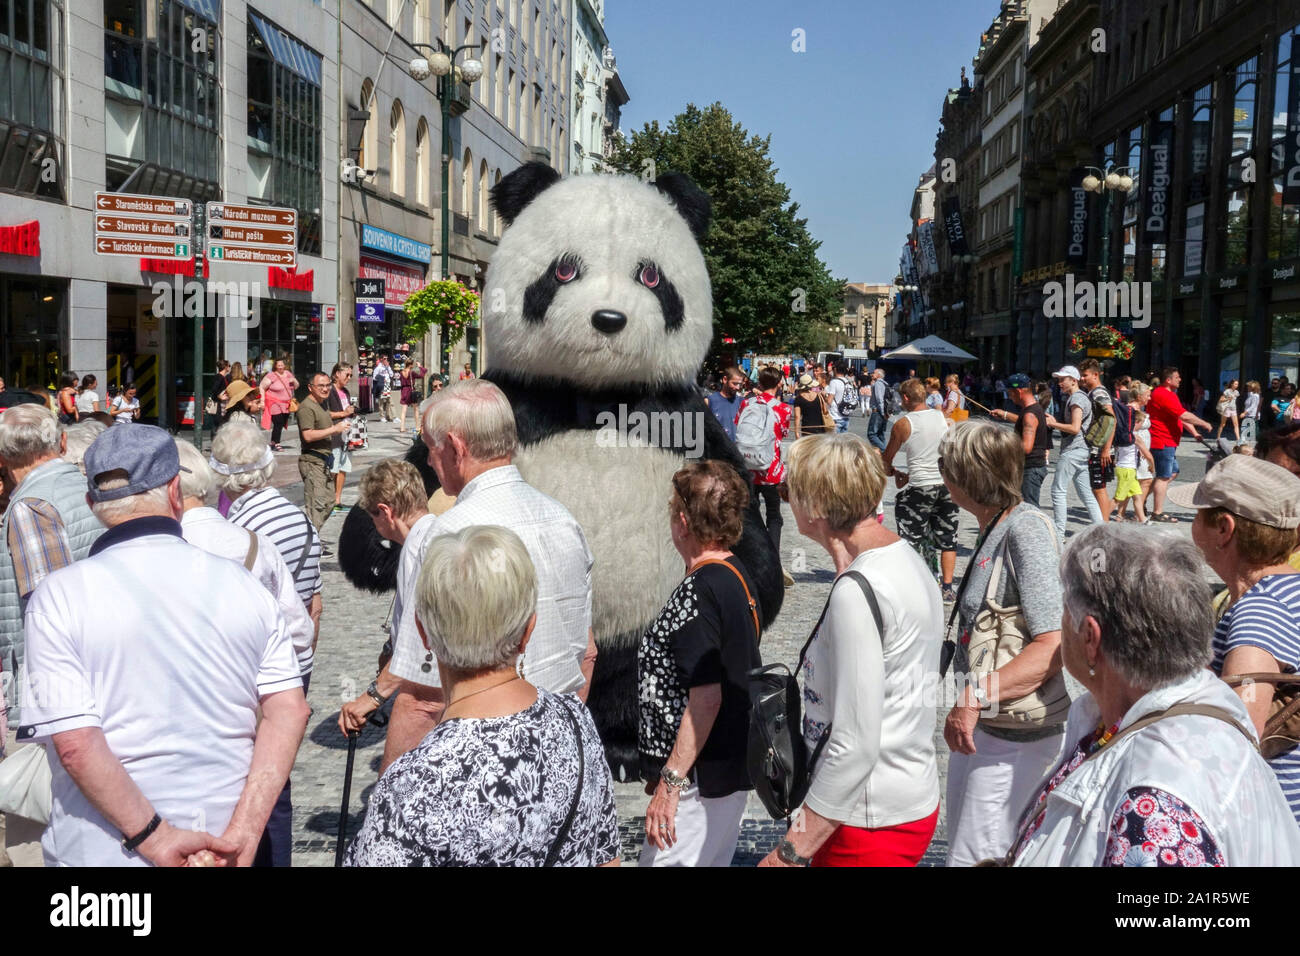 Une foule de gens le centre-ville de Prague se promènant autour de Giant Plush Panda, la place Mustek Venceslas, Prague foule République tchèque Banque D'Images